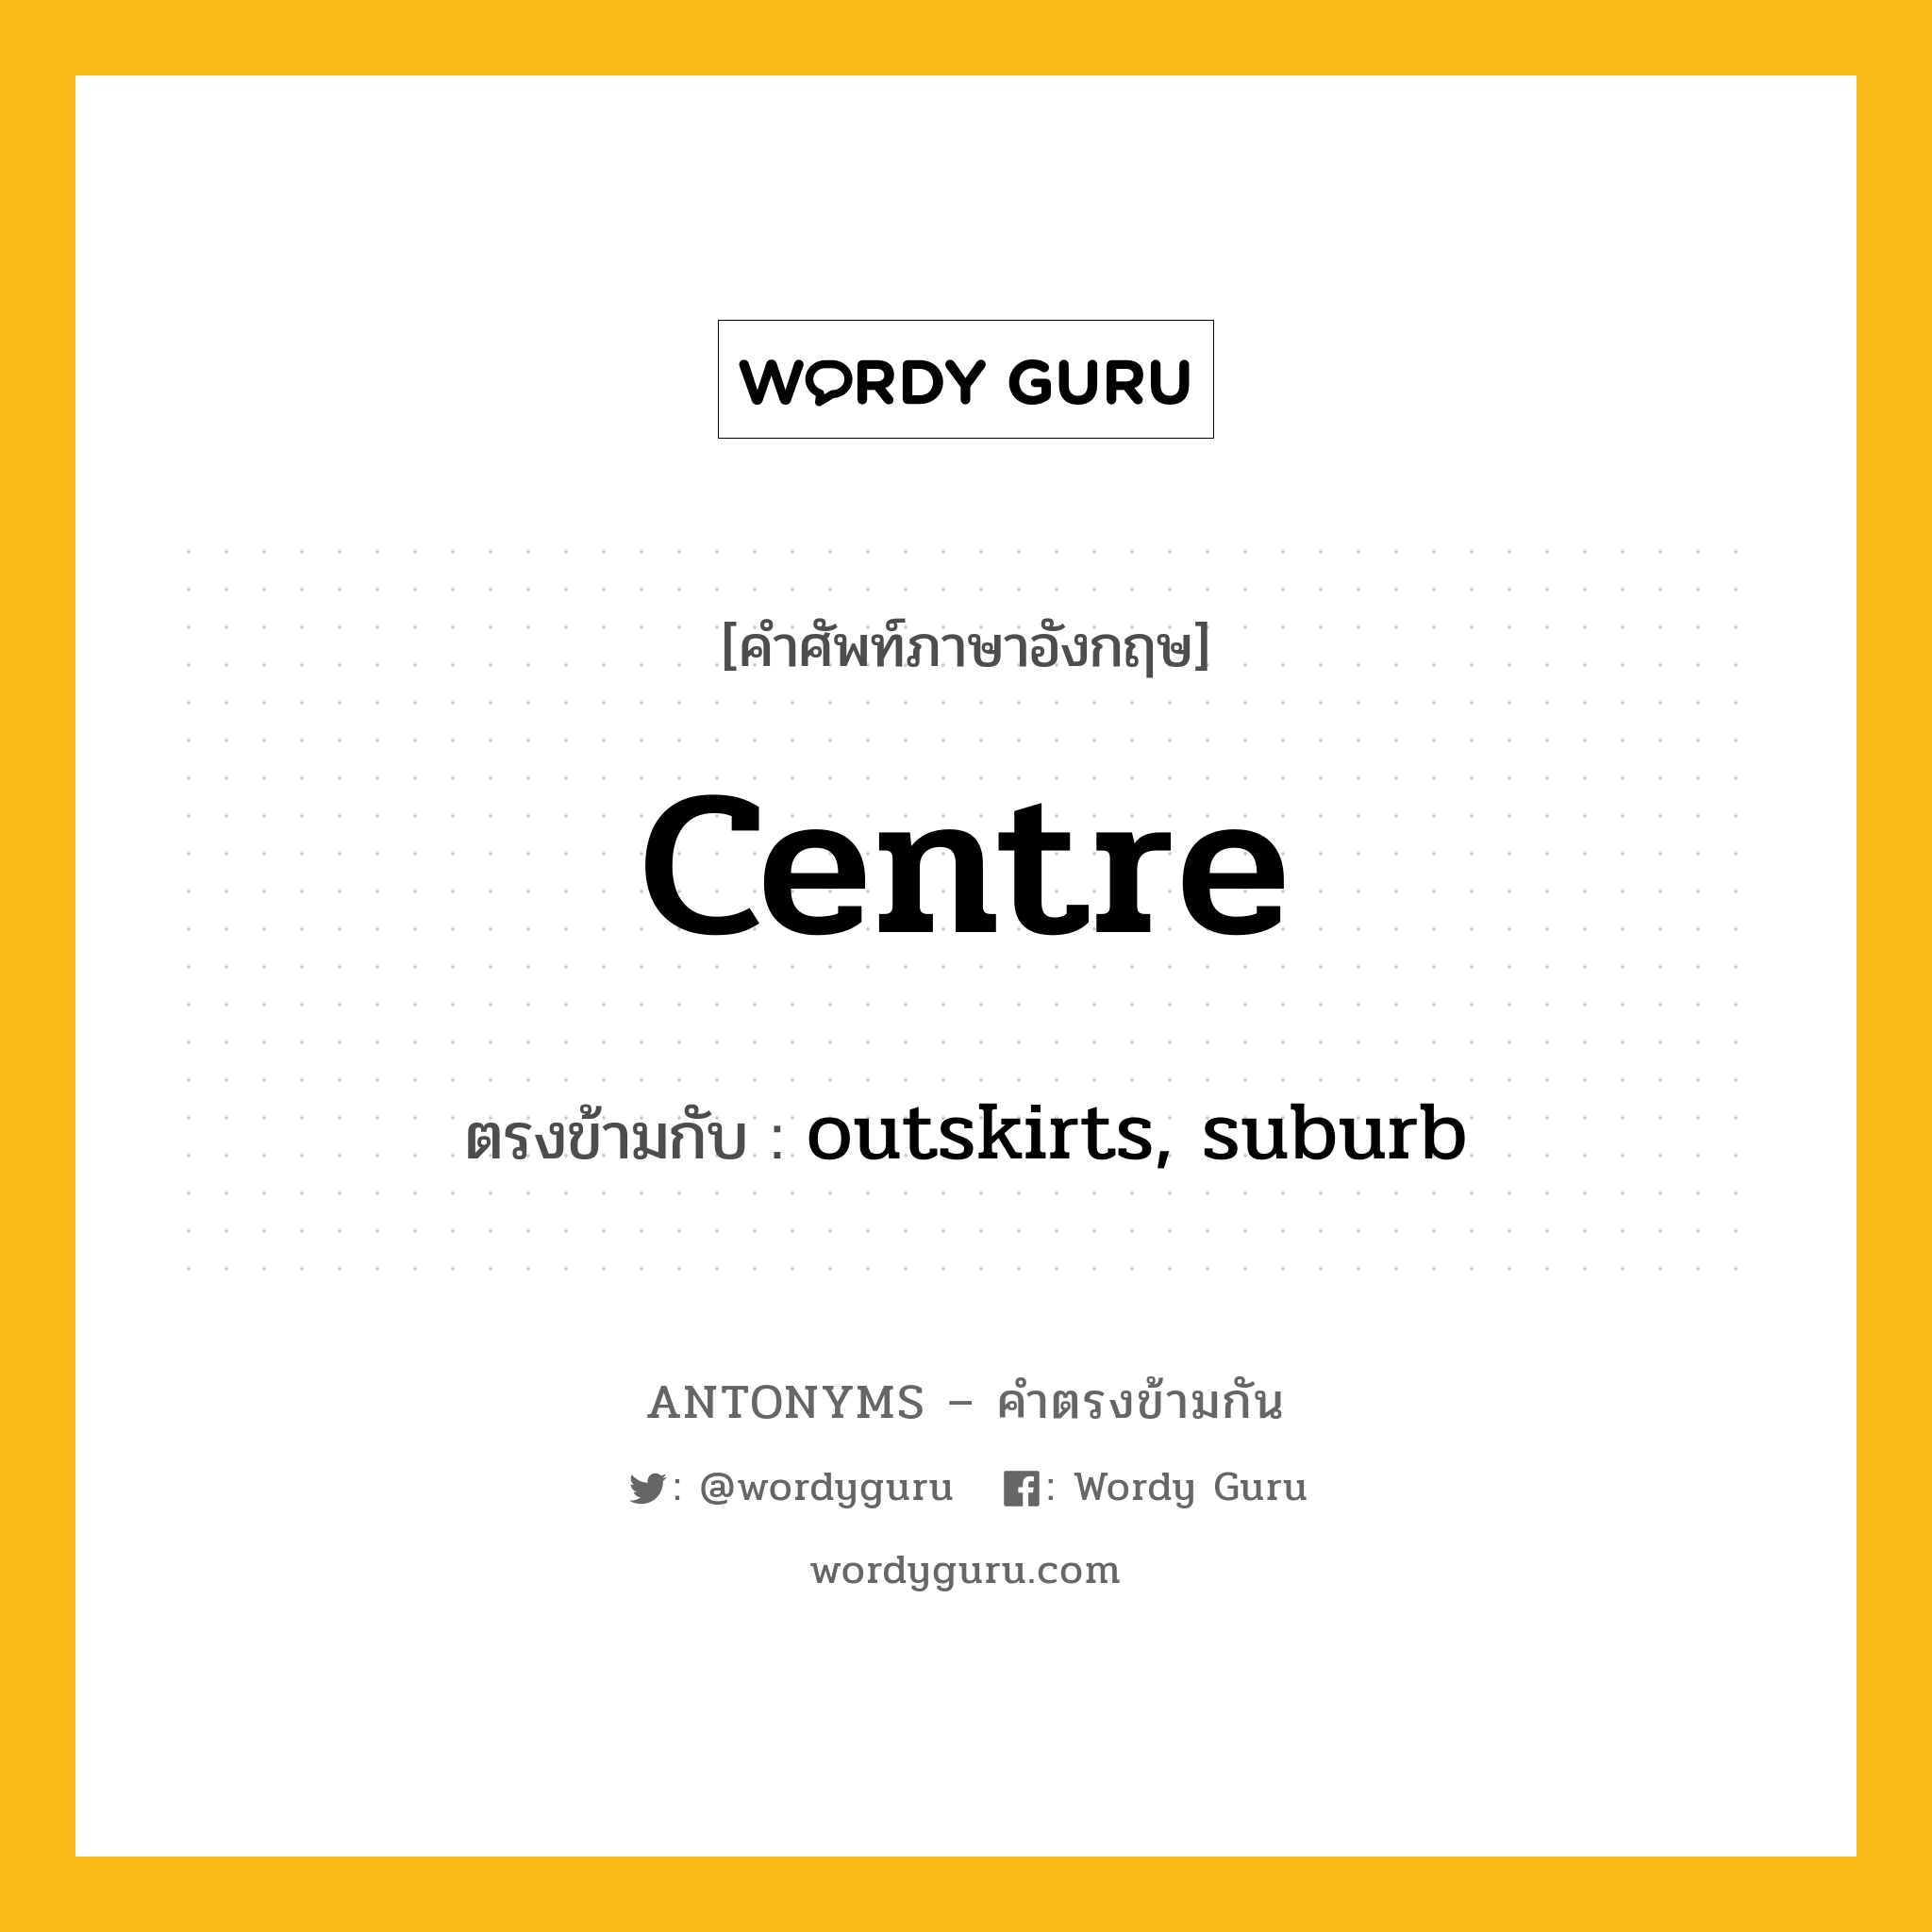 centre เป็นคำตรงข้ามกับคำไหนบ้าง?, คำศัพท์ภาษาอังกฤษ centre ตรงข้ามกับ outskirts, suburb หมวด outskirts, suburb